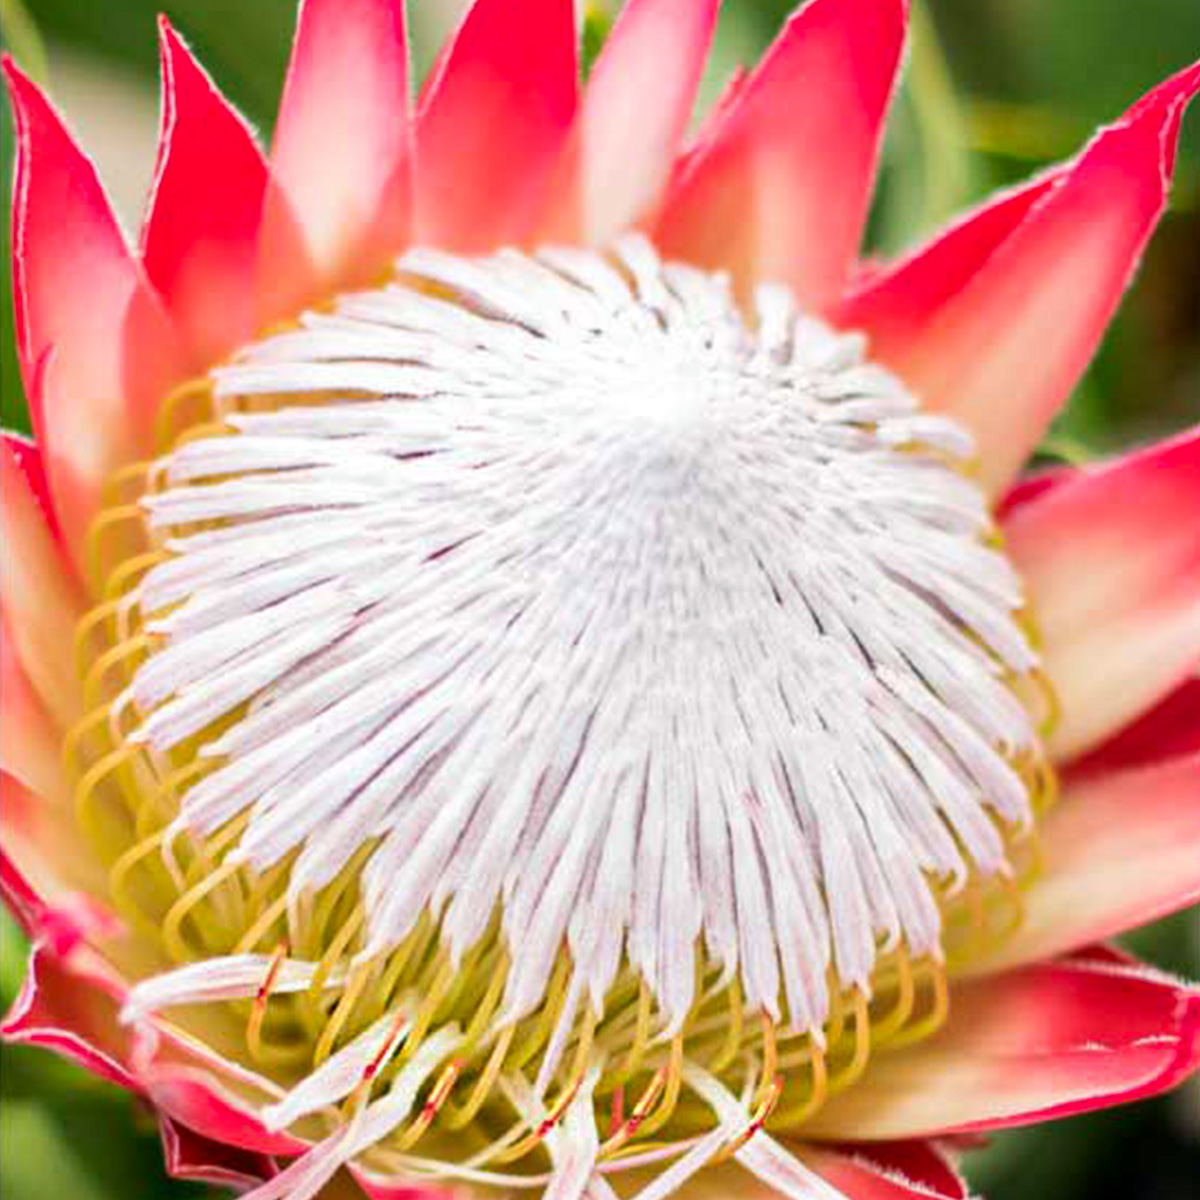 Zuluflora Protea Madiba - on Thursd